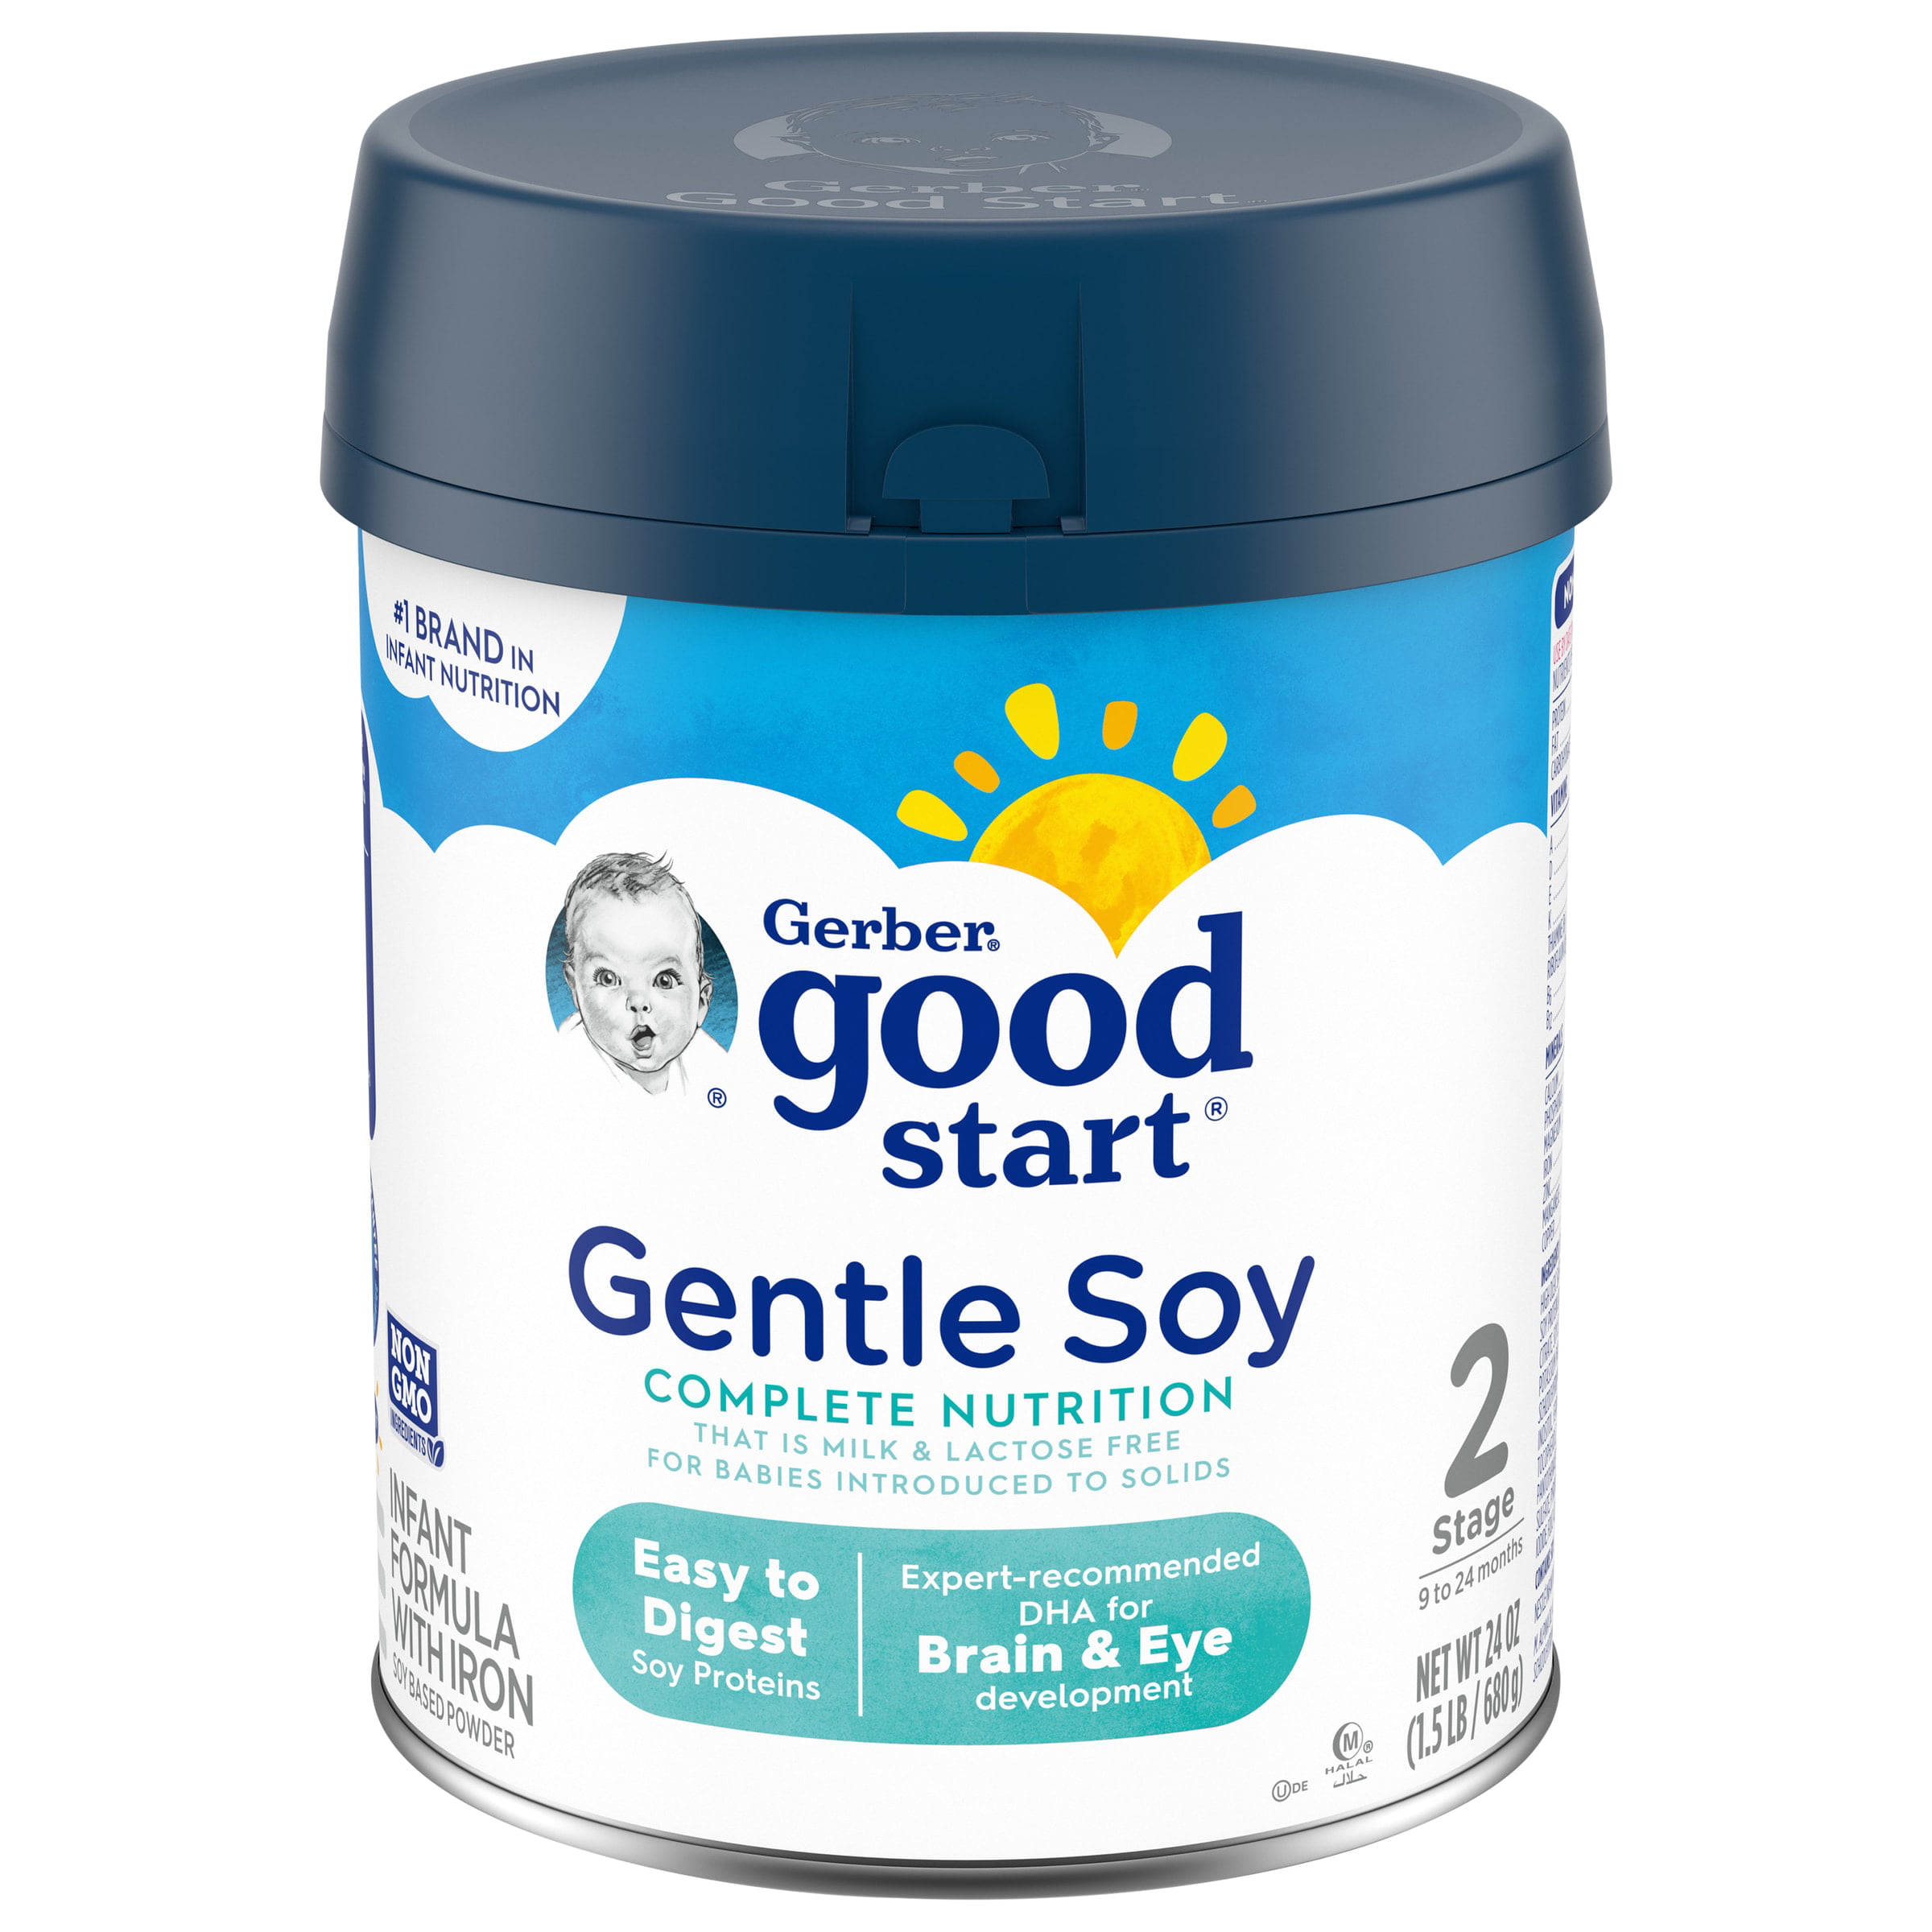 Gerber Good Start Gentle Soy Powder Infant and Toddler Formula, 24 oz Canister (4 Pack) - Walmart.com